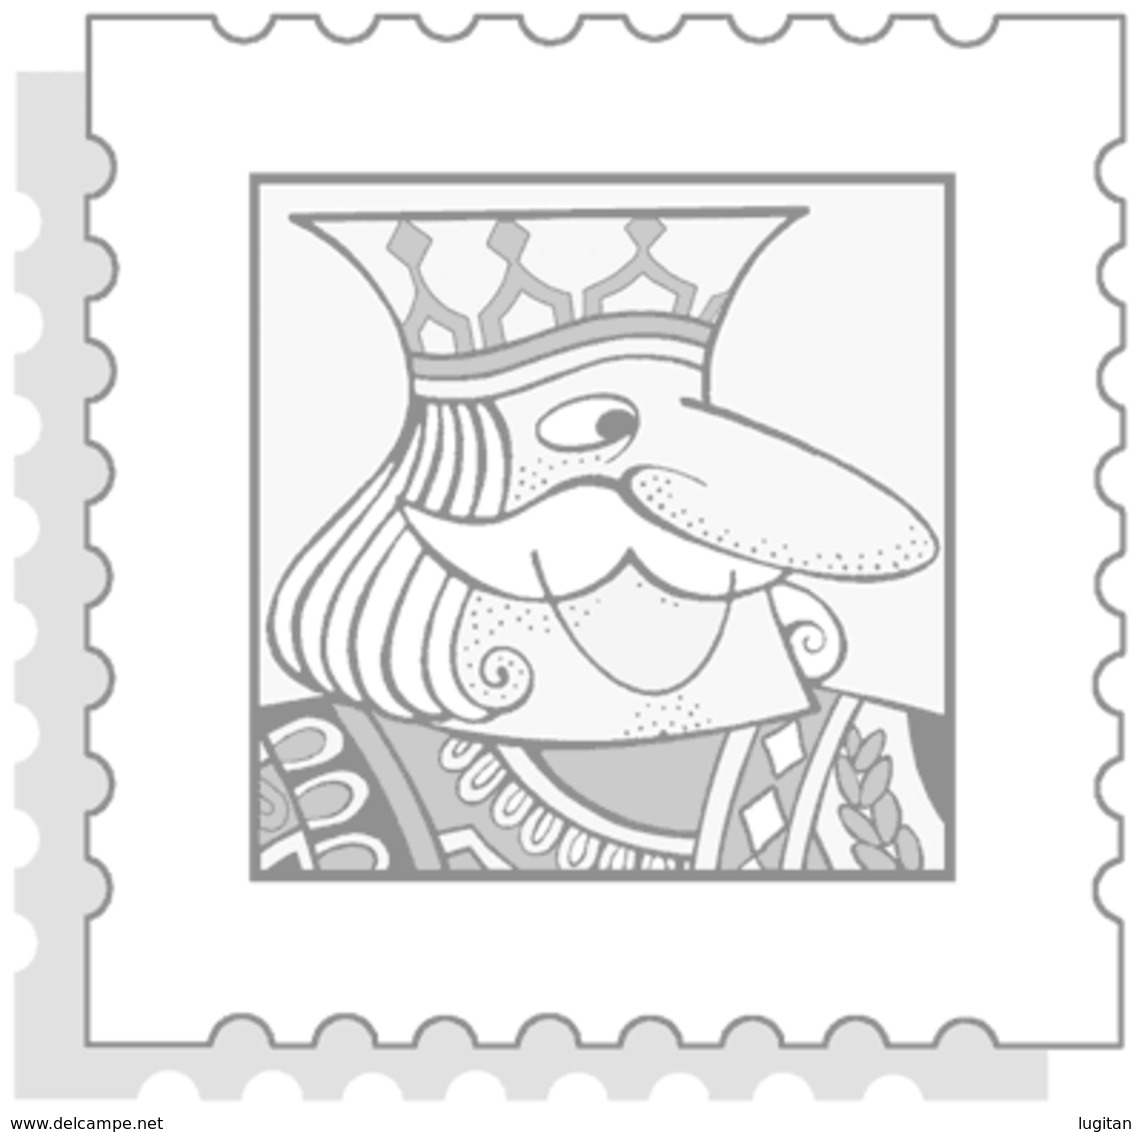 AGGIORNAMENTO MARINI VERSIONE EUROPA - FRANCIA ARTE - QUADRI  ANNO 2006 NUOVO D'OCCASIONE - Kisten Für Briefmarken